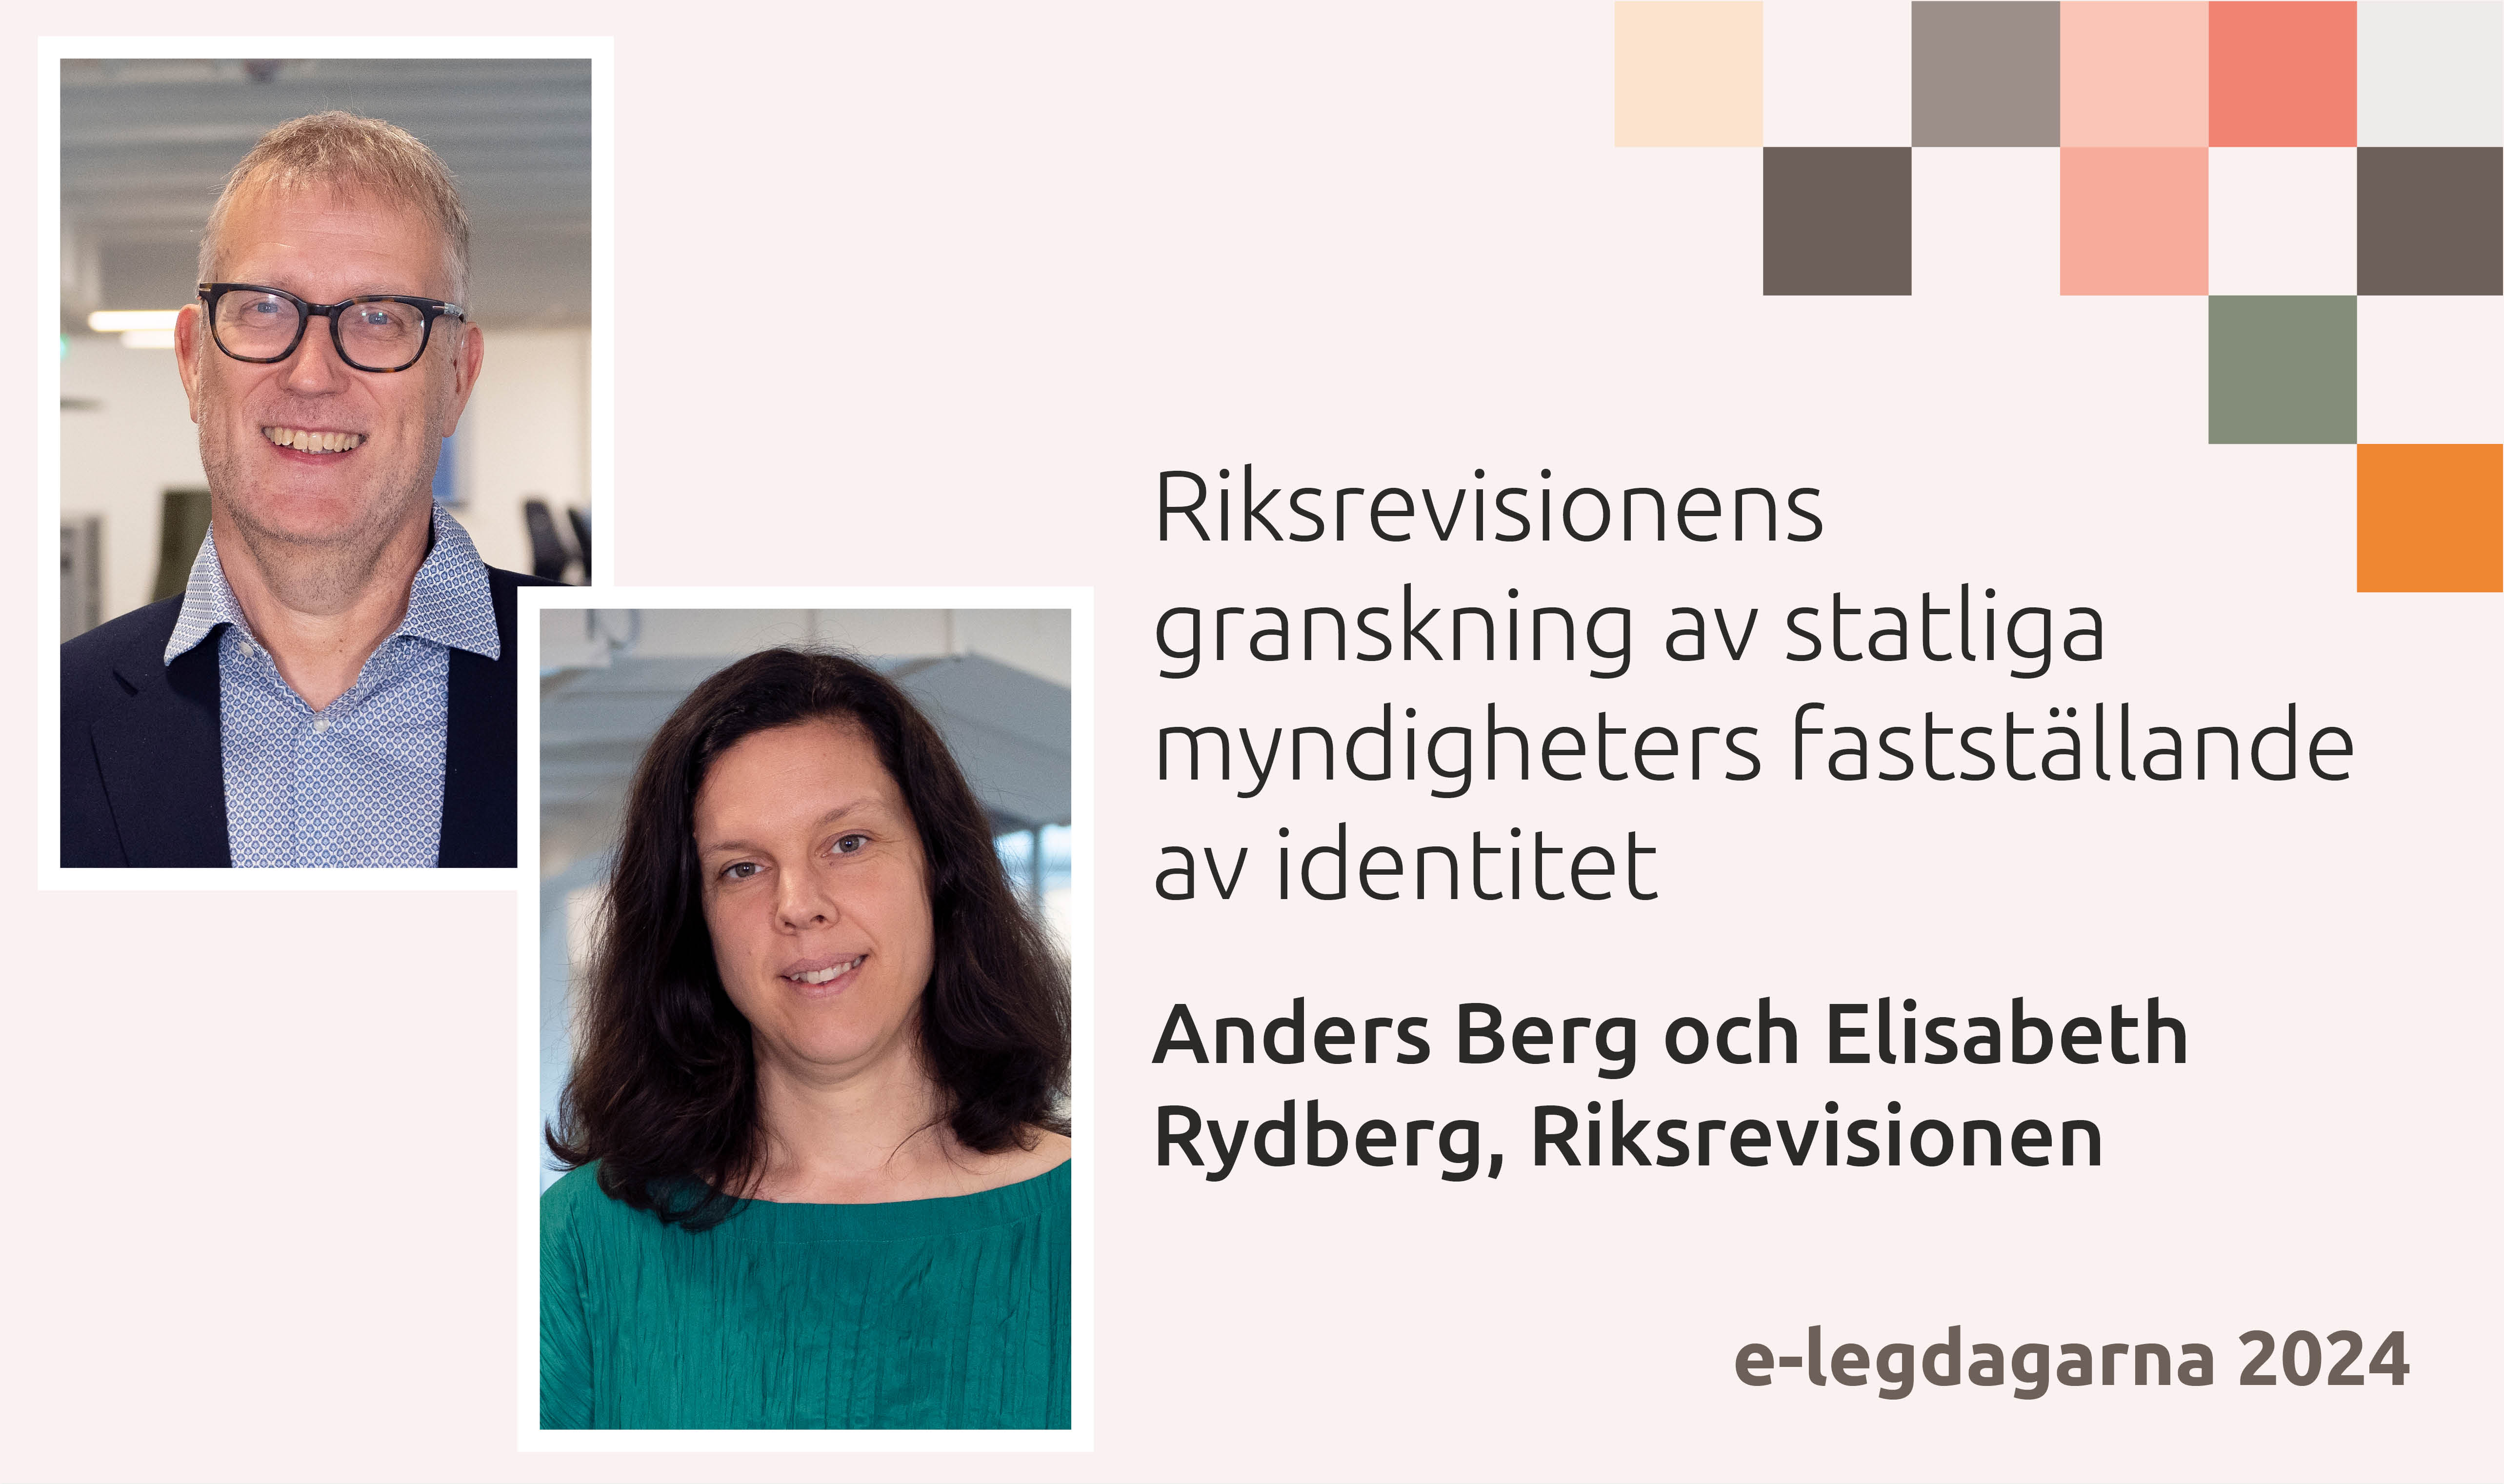 Anders Berg och Elisabeth Rydberg, Riksrevisionen